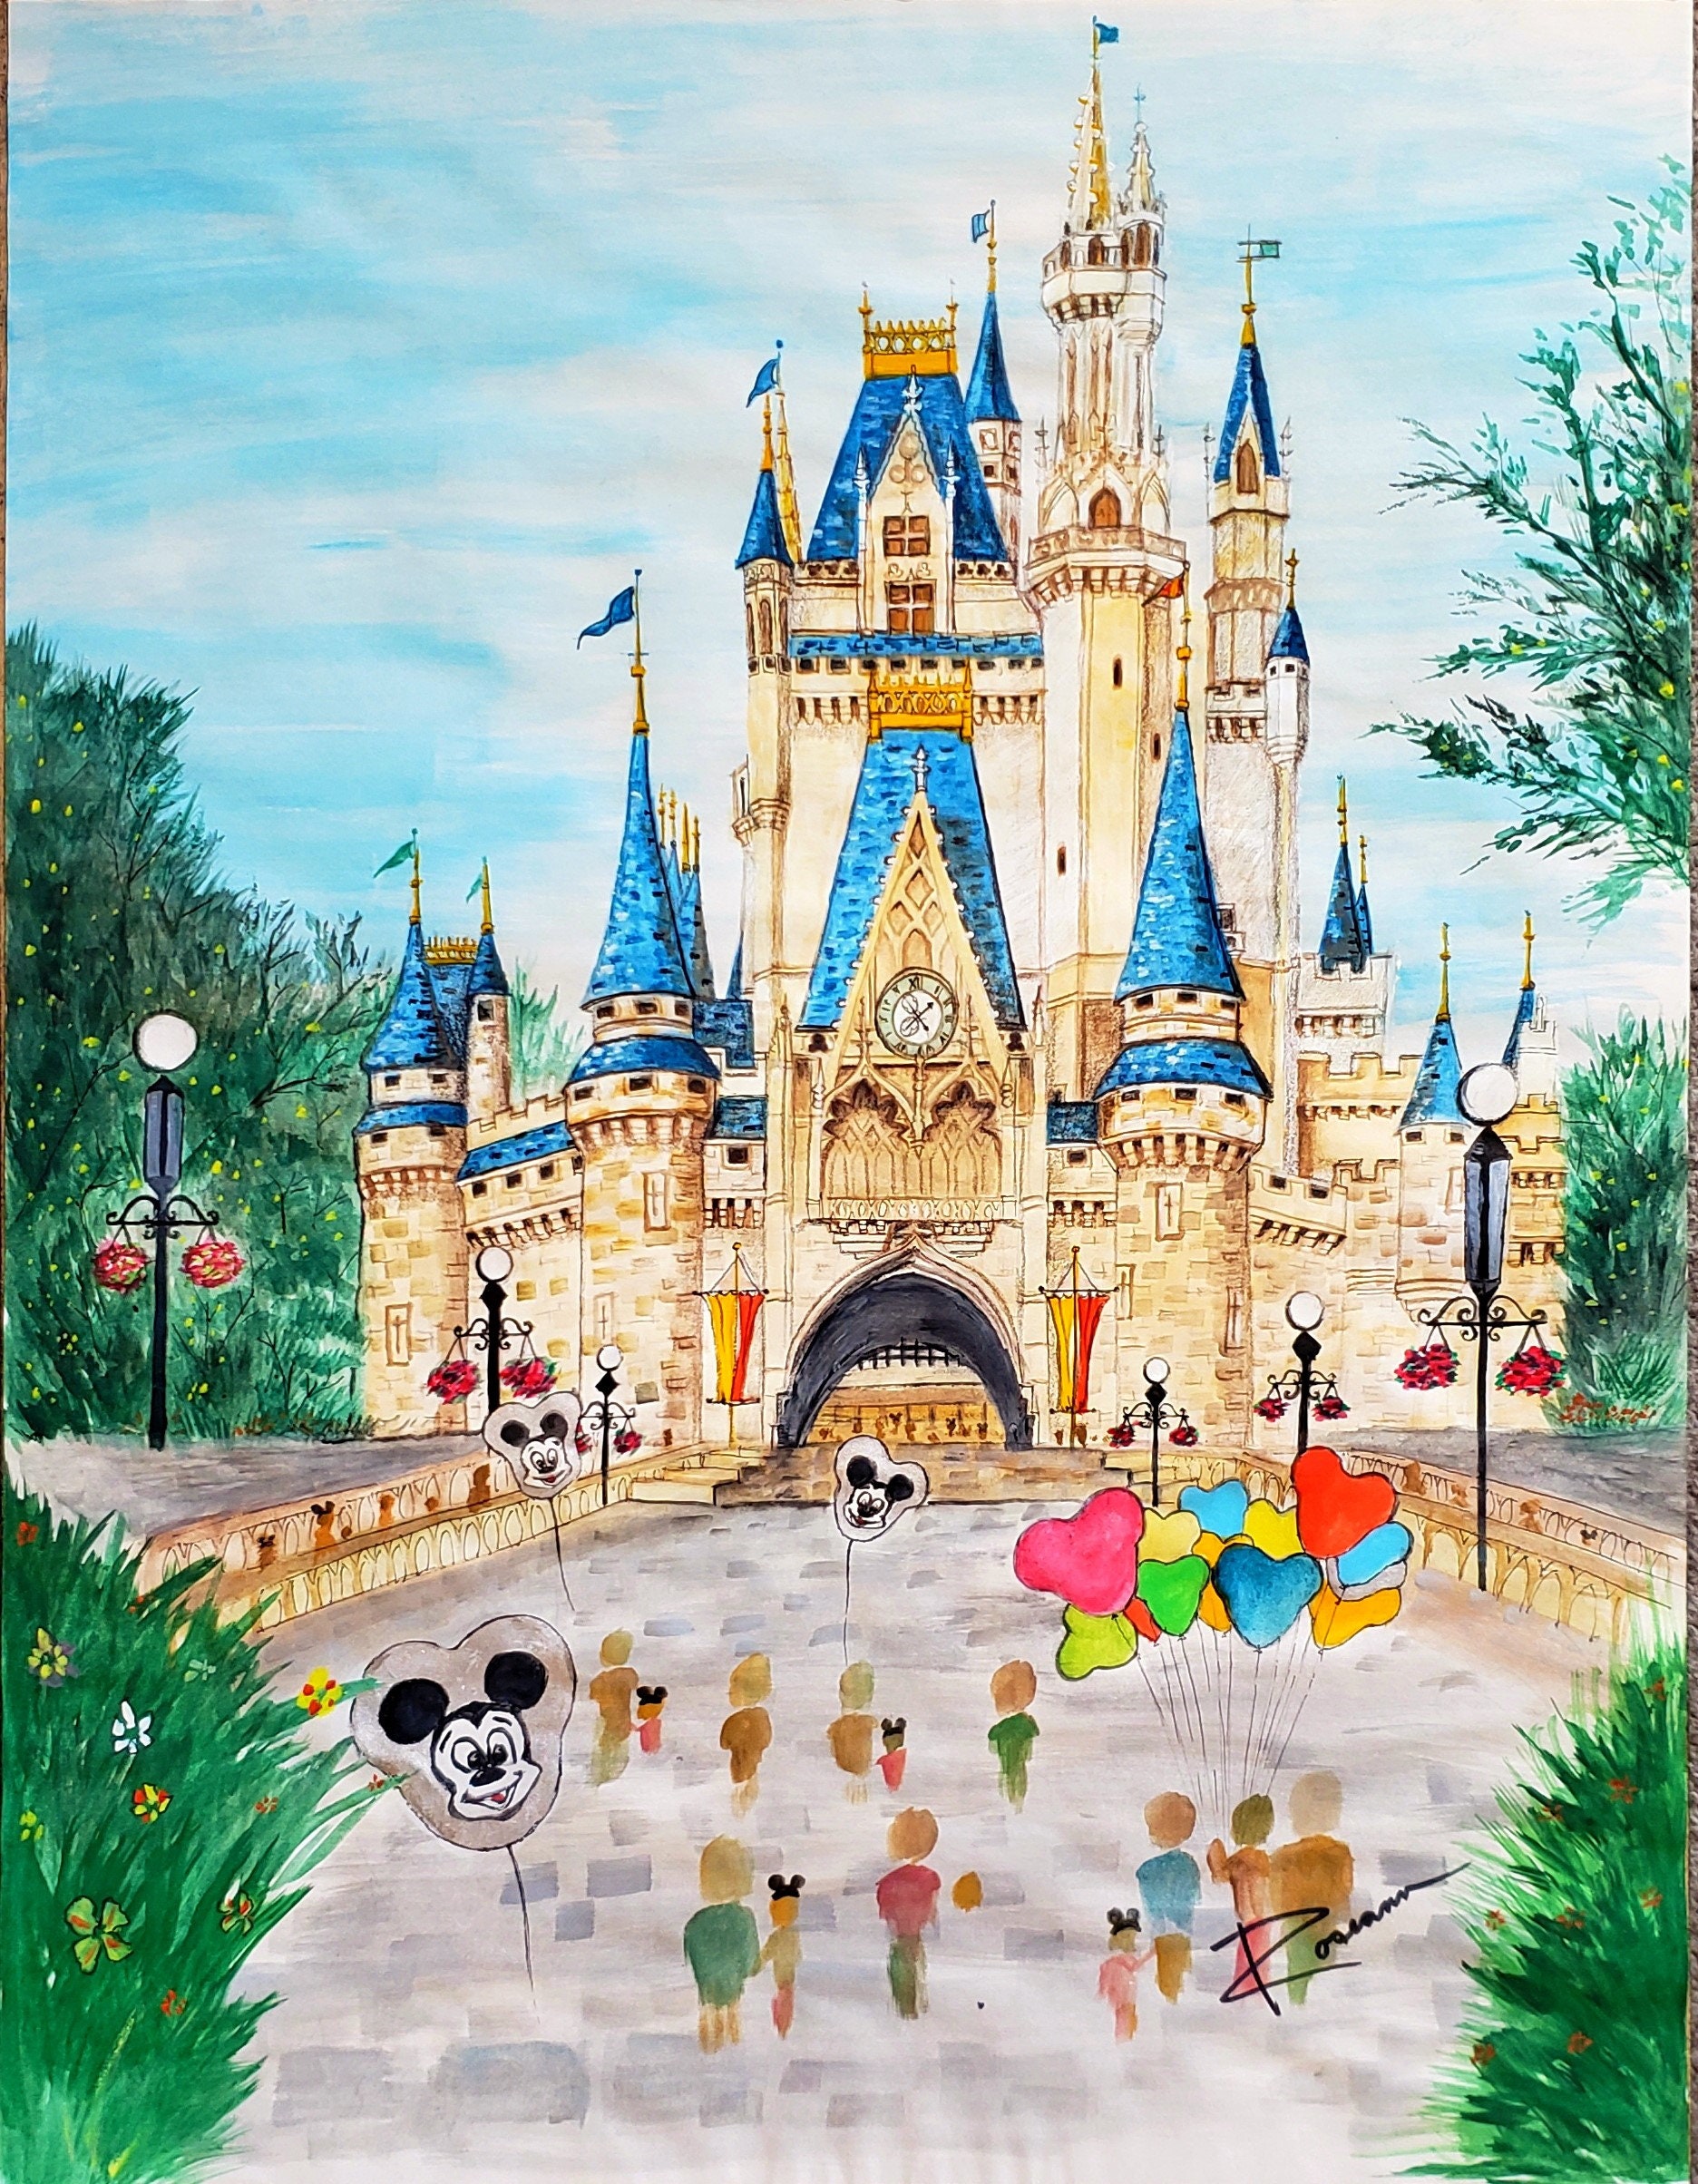 Disney Hand Painted Shoes Disney Shoes Cinderella Castle 